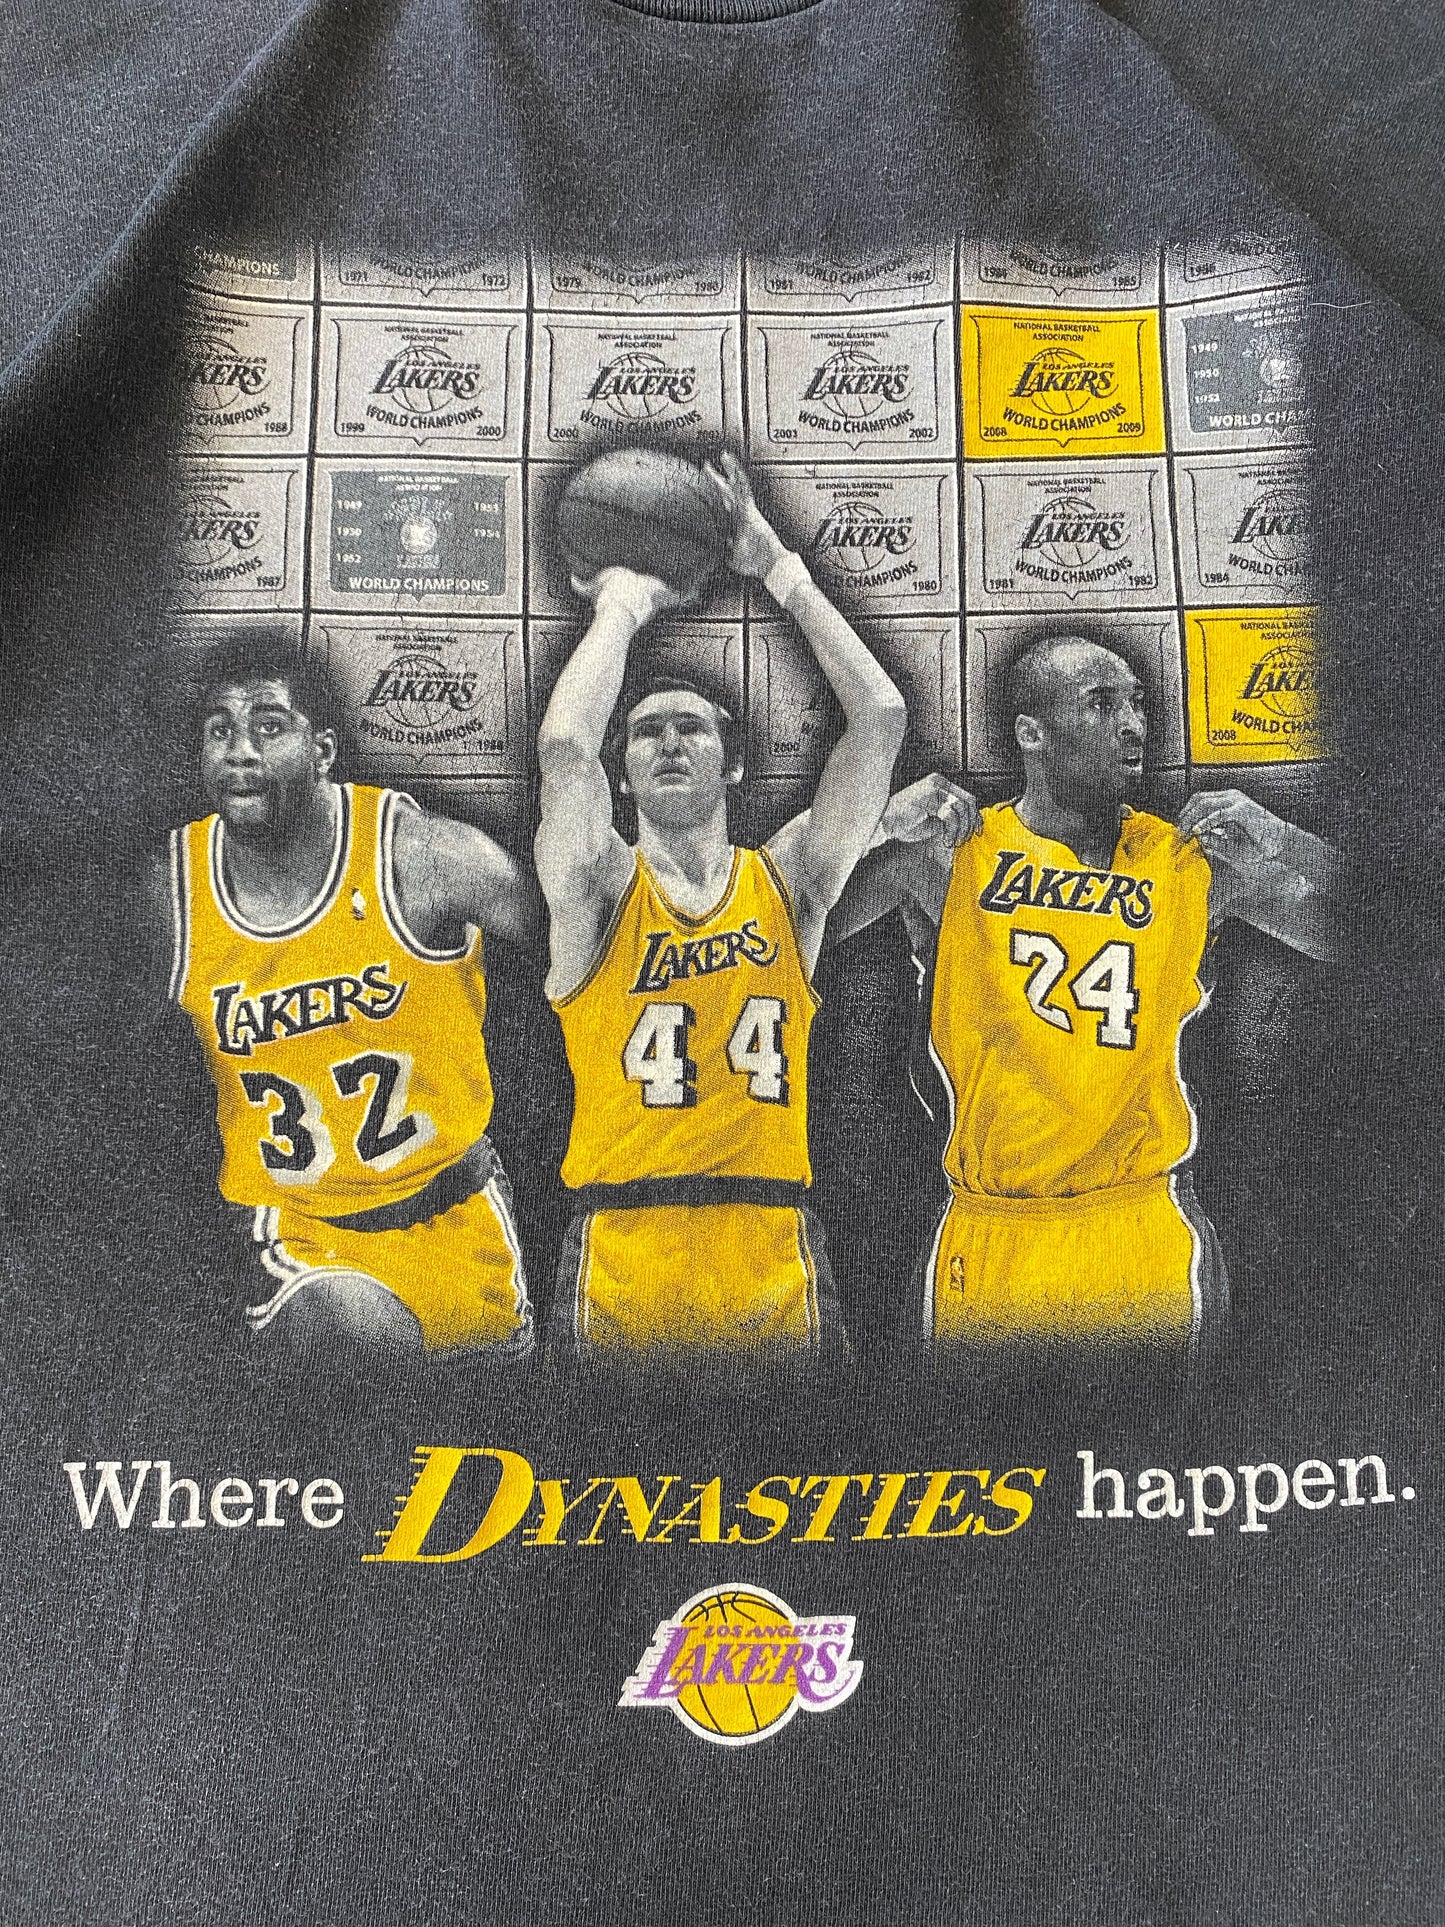 2009 Lakers Kobe Bryant “Where Dynasties Happen” Tee